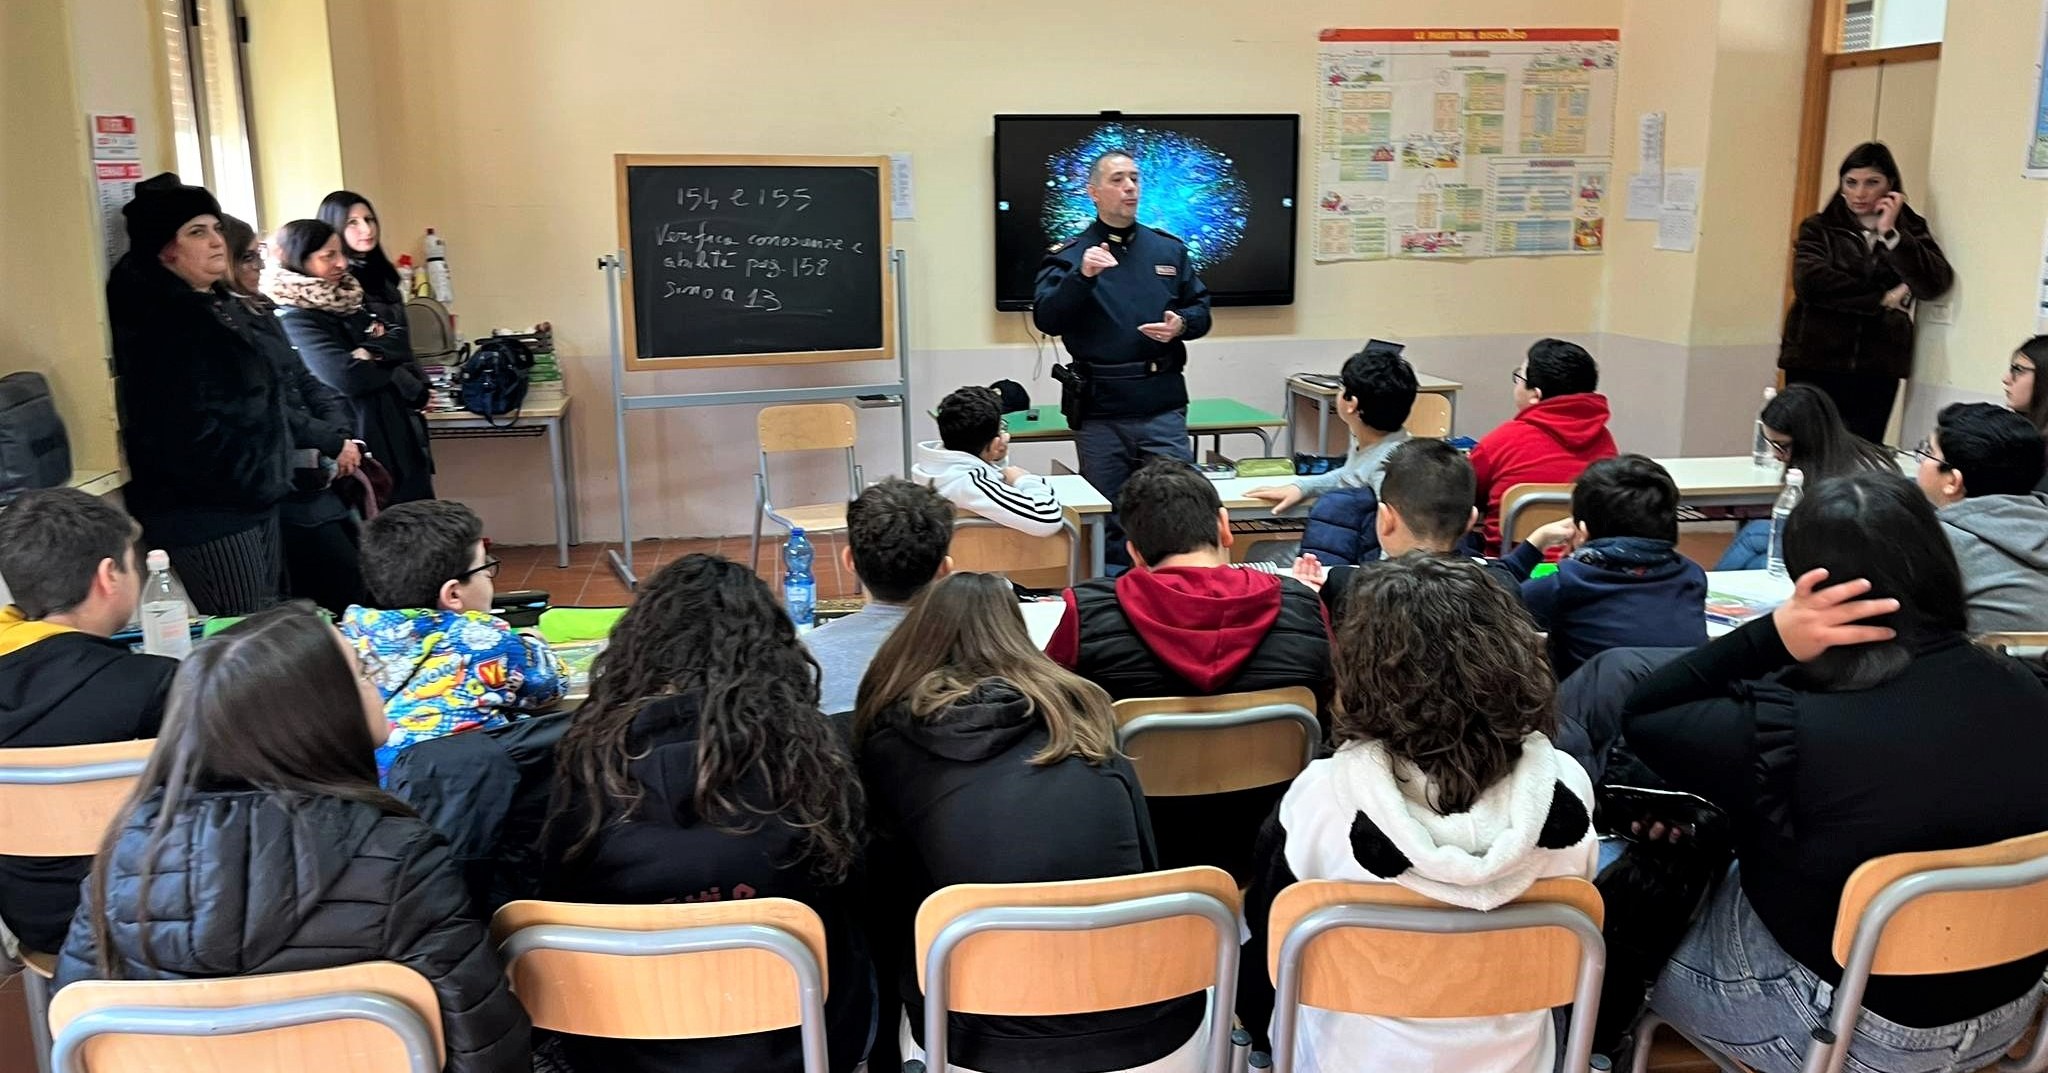 Incontro tra gli agenti della Polizia Postale e gli studenti dell’Istituto Comprensivo “Vallelunga/Marianopoli”